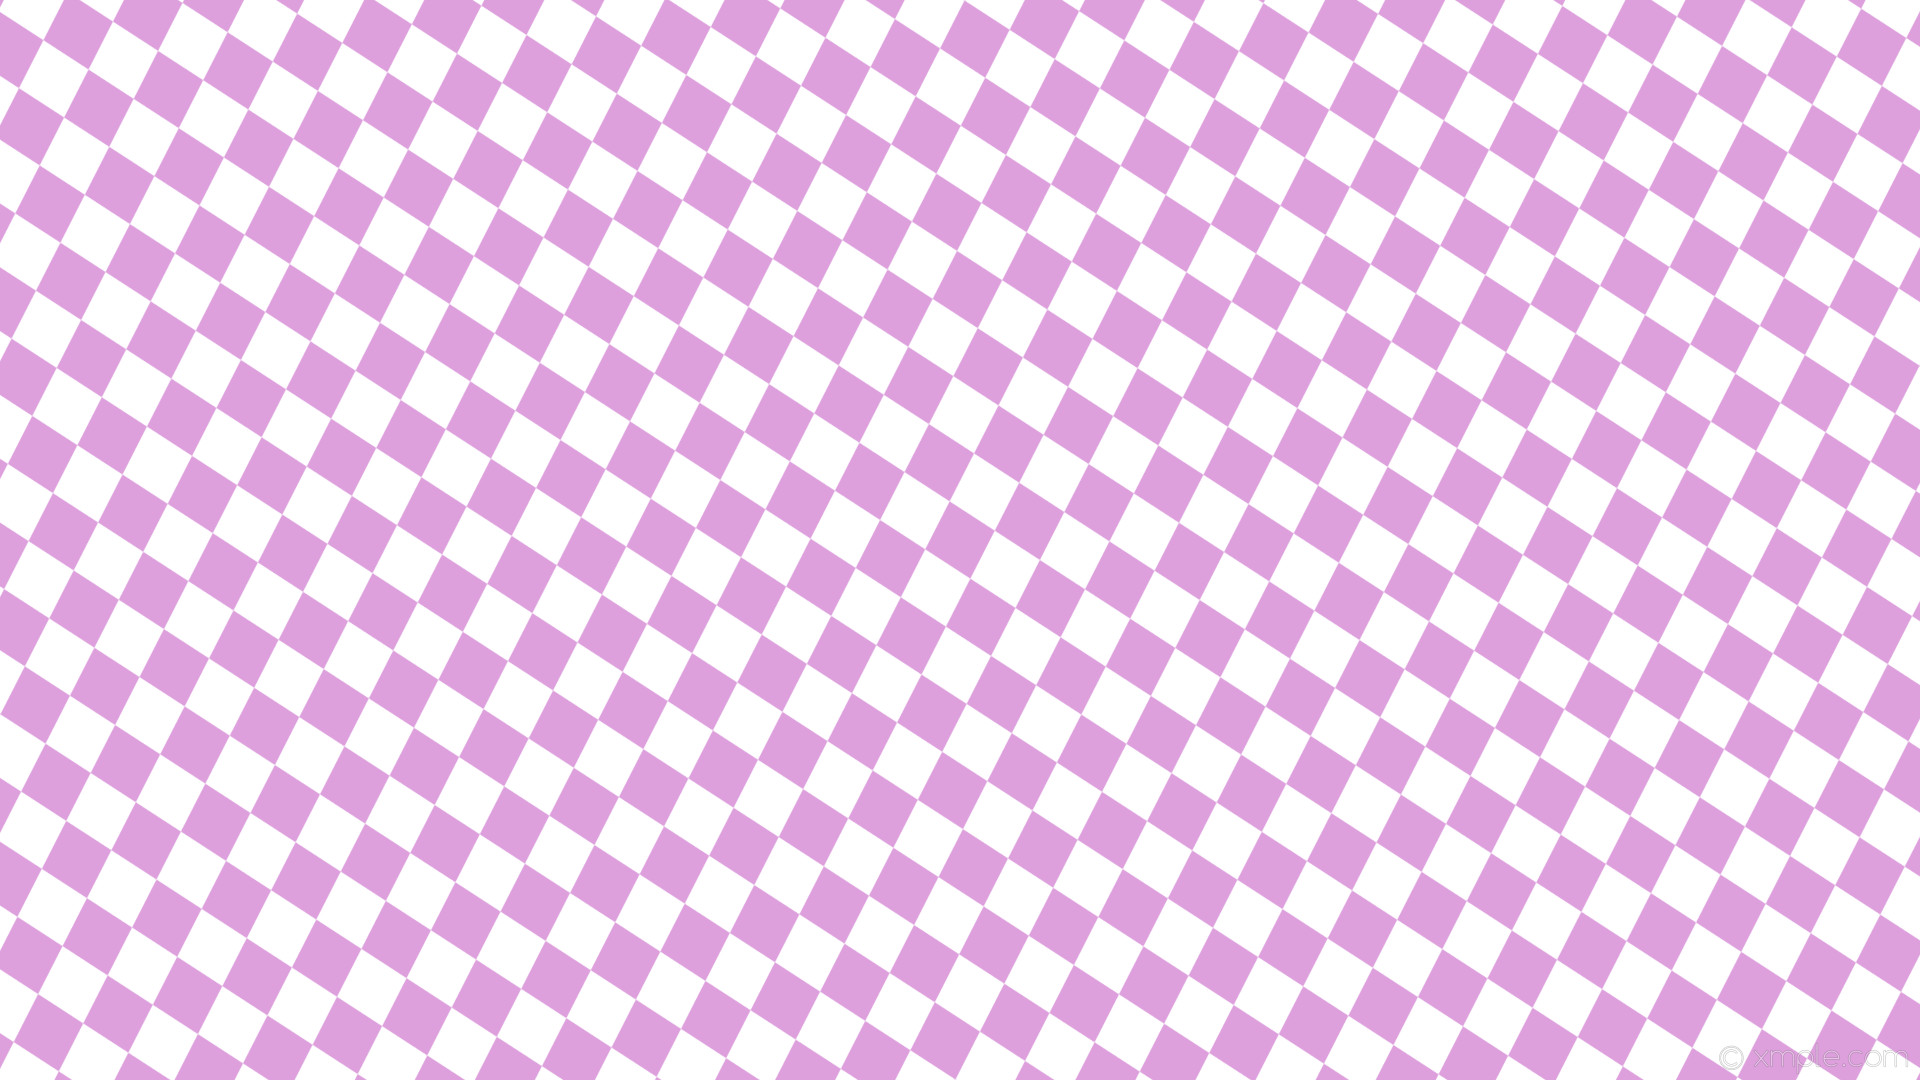 1920x1080 wallpaper white rhombus lozenge purple diamond plum #dda0dd #ffffff 105Â°  80px 72px